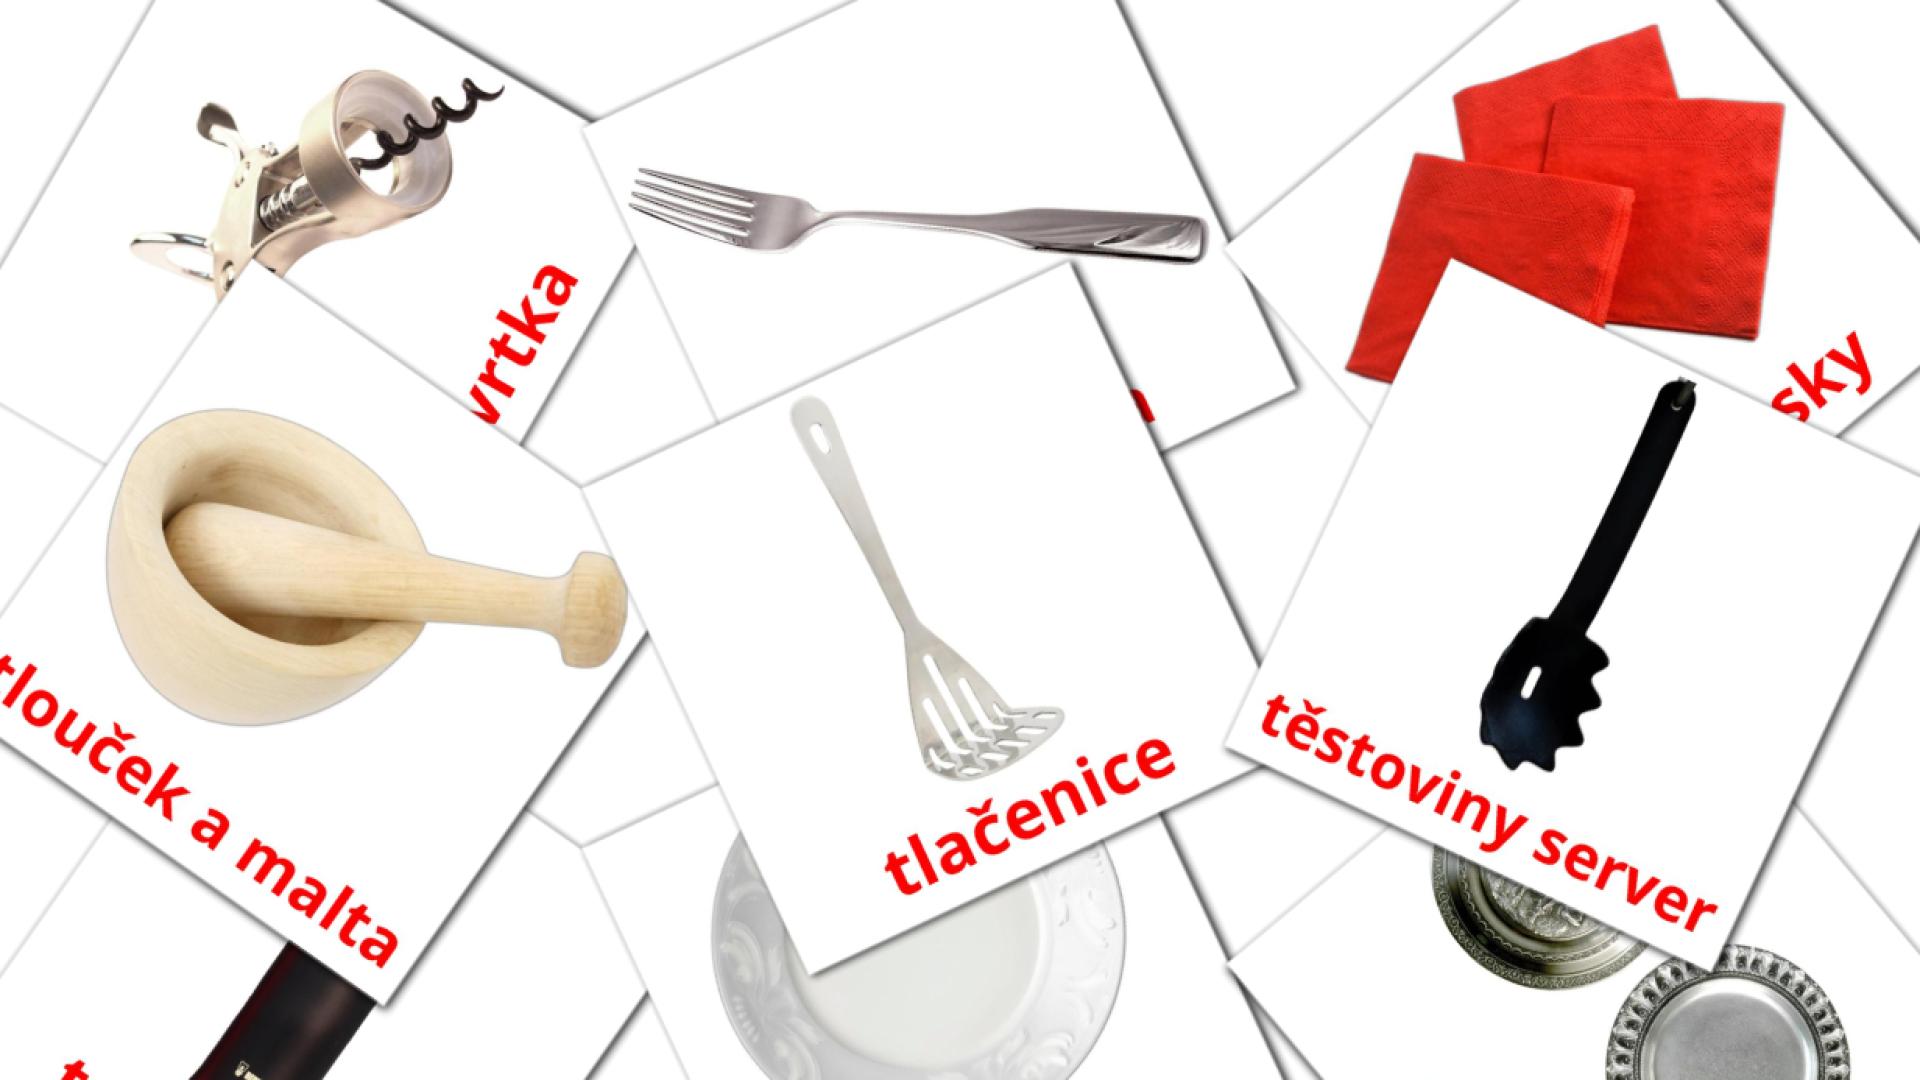 Kuchyně czech vocabulary flashcards